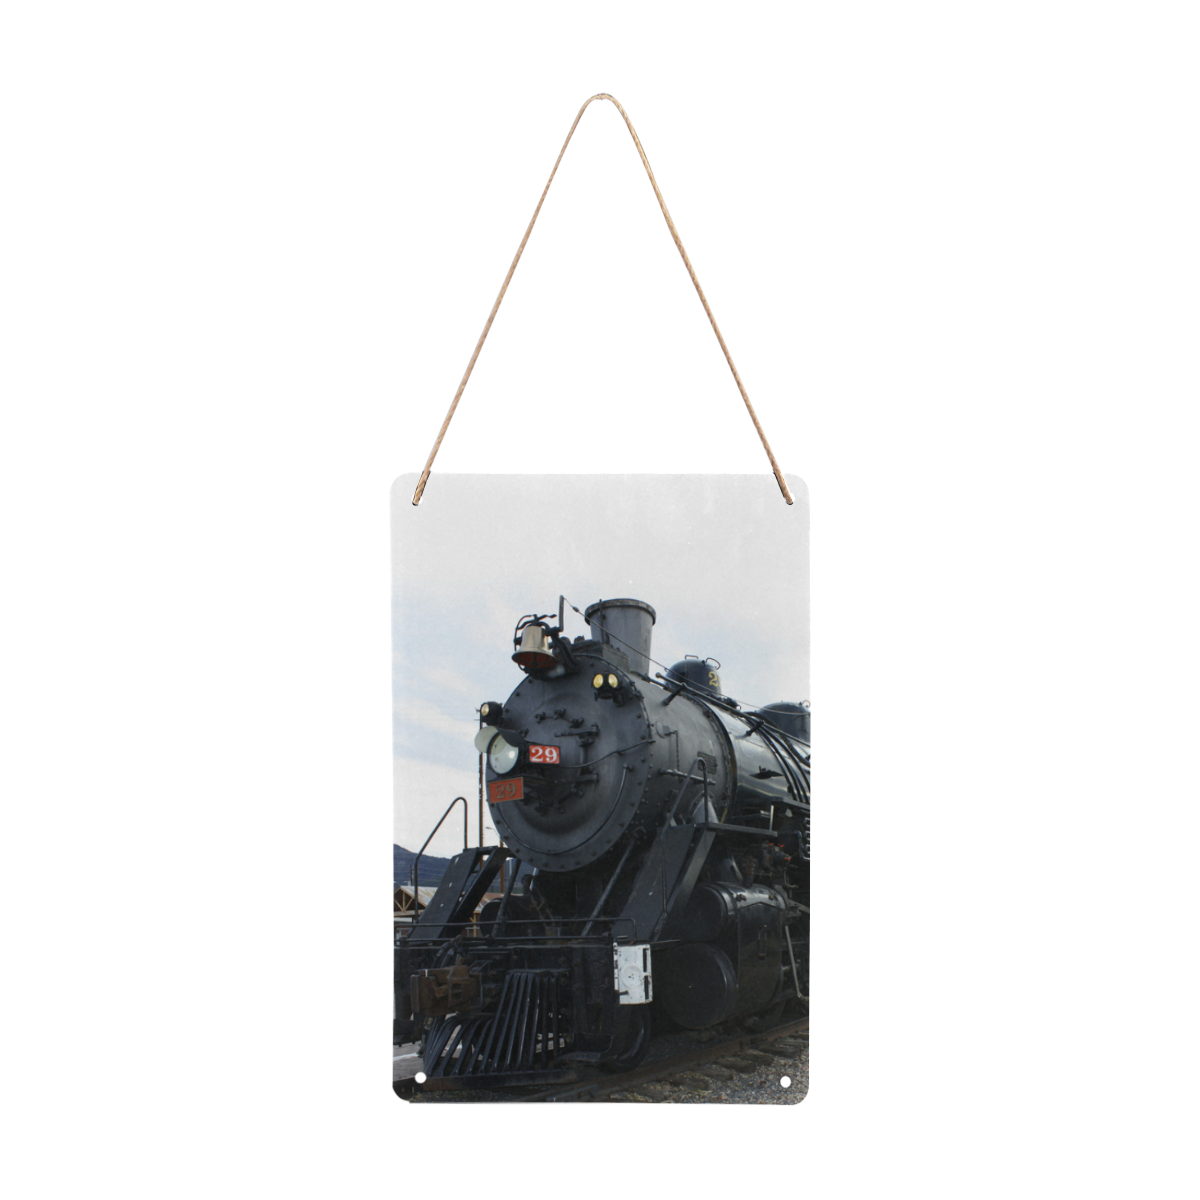 Railroad Vintage Steam Engine on Train Tracks Metal Tin Sign 8"x12"